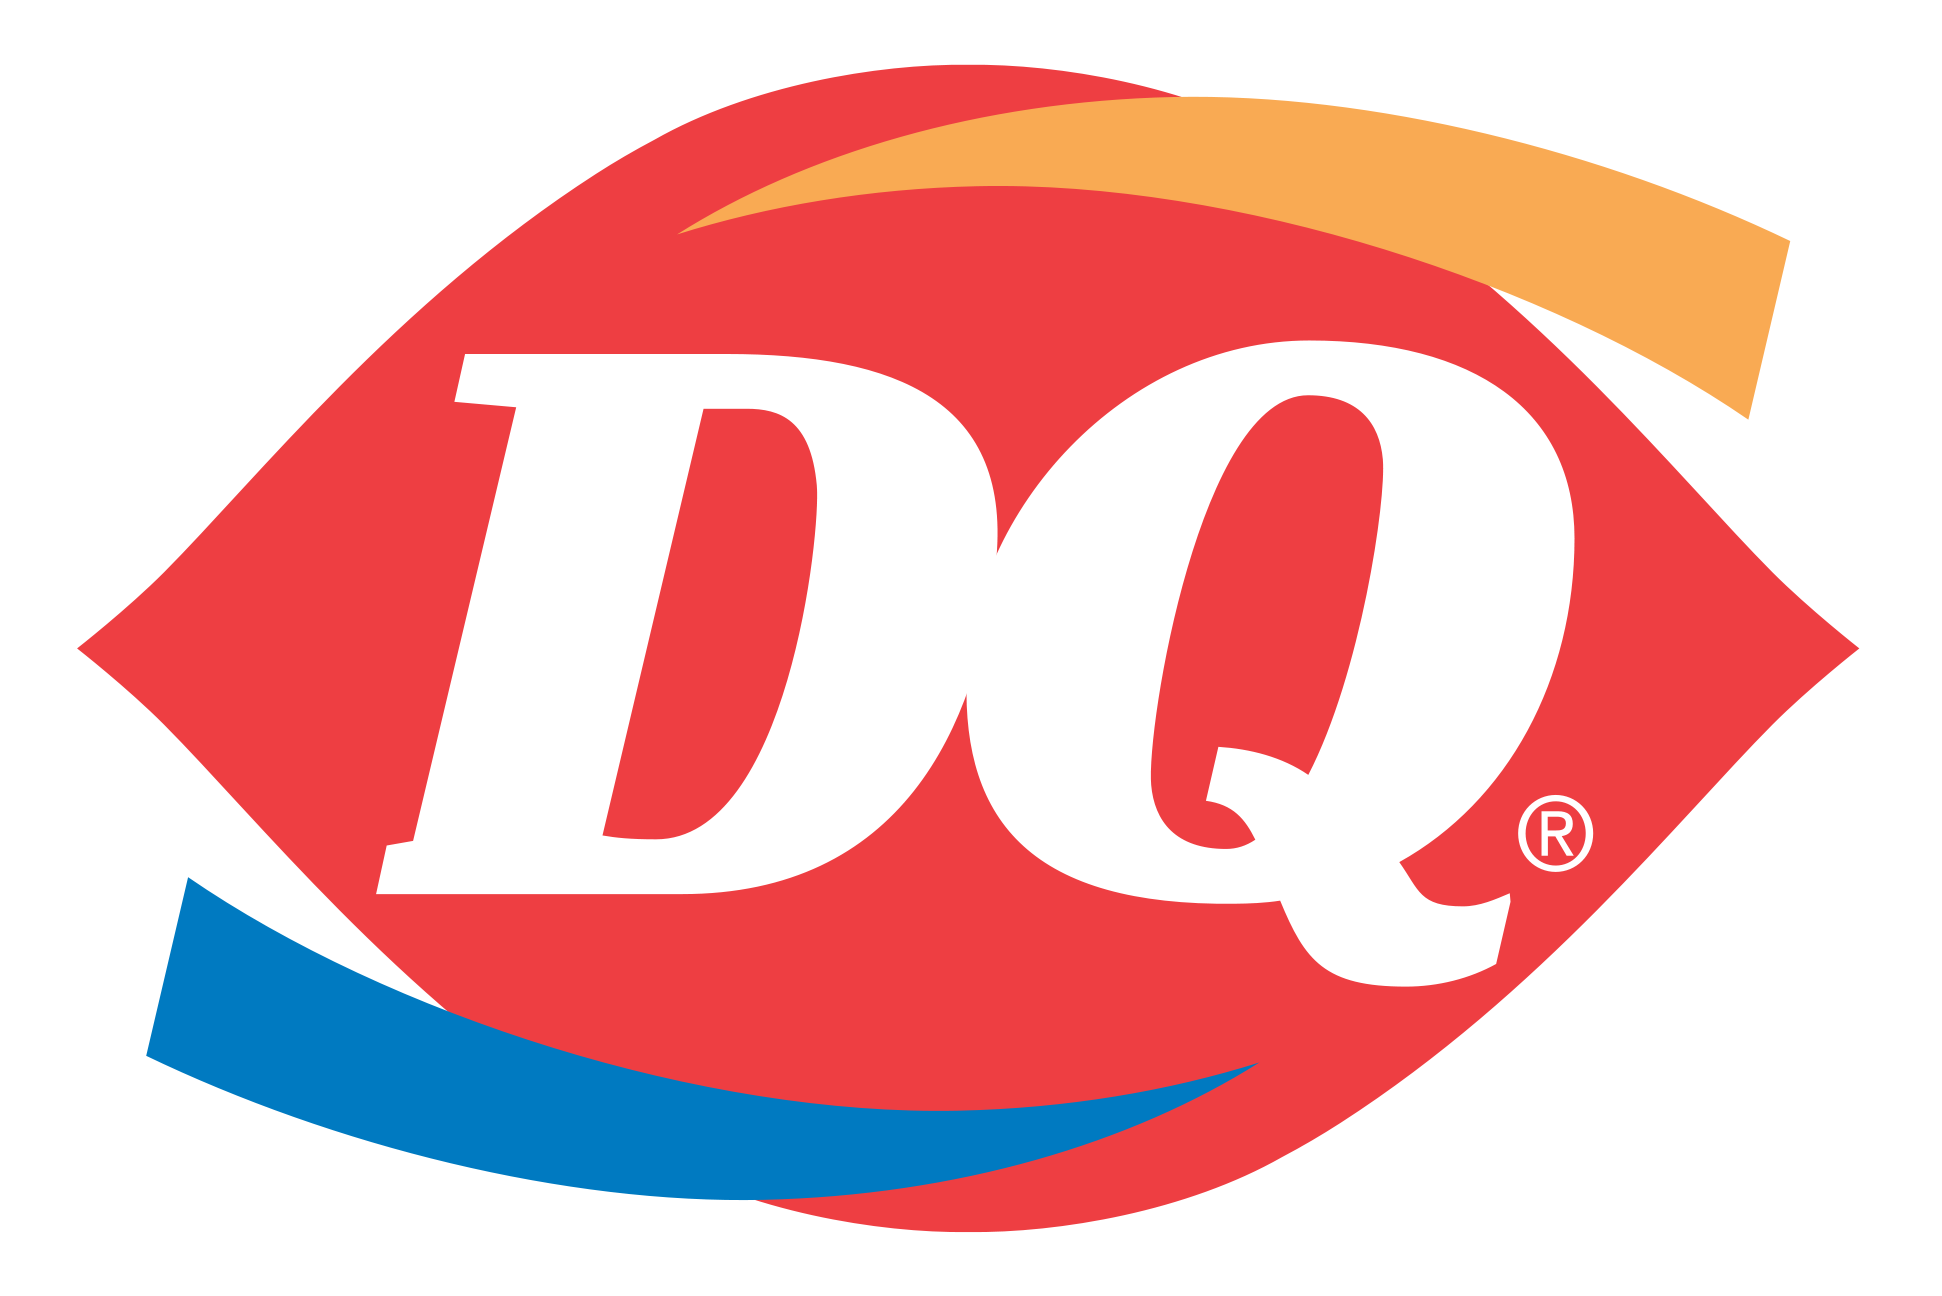 Dairy_Queen_logo.png